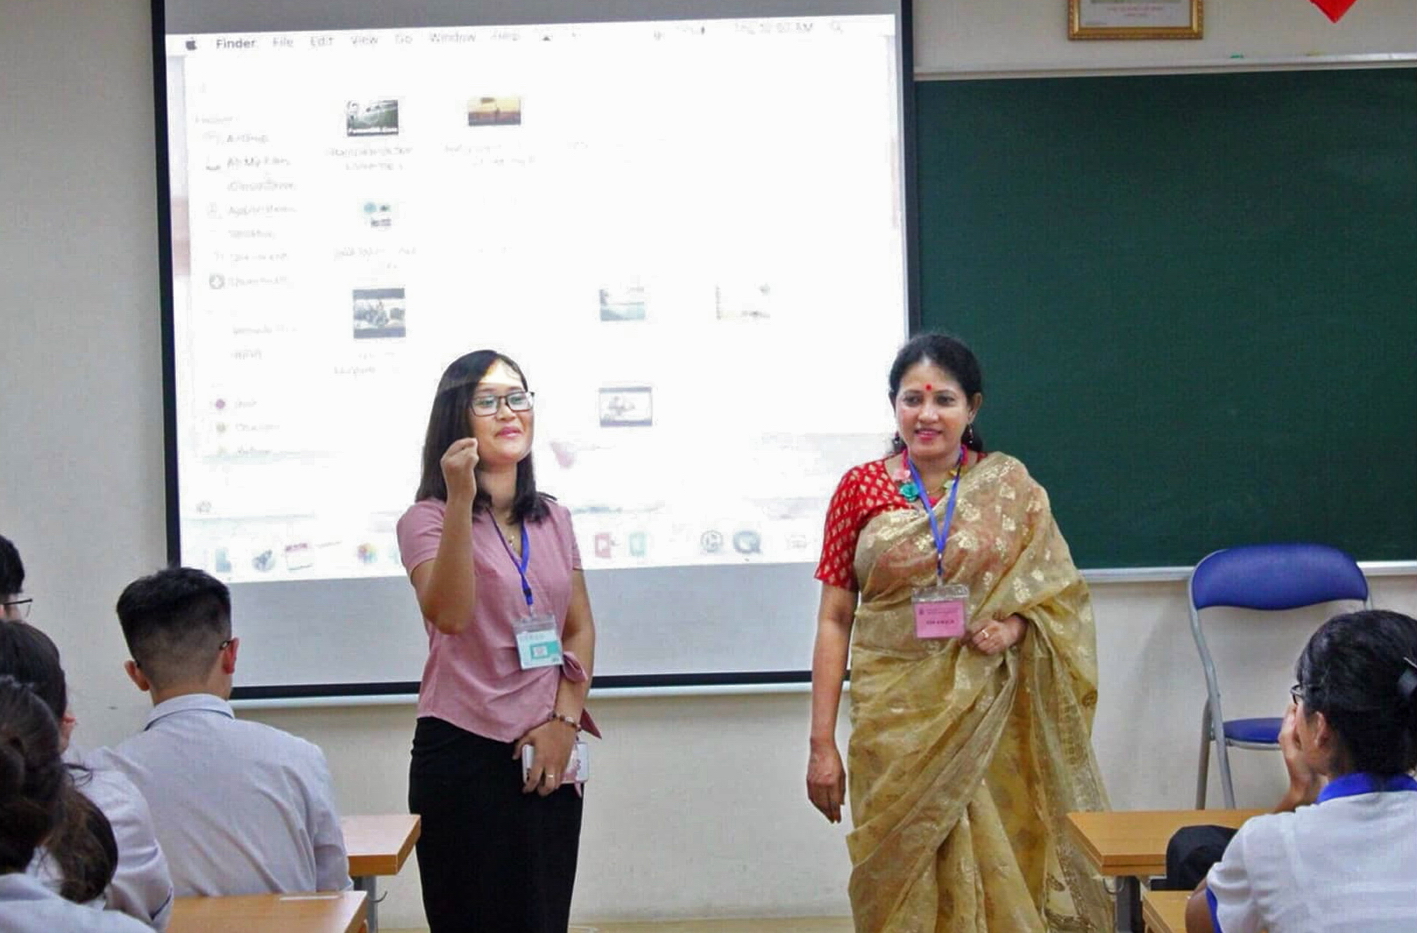 Không chỉ cùng học sinh học tiếng Anh trực tuyến với các lớp học khắp các châu lục, cô Phượng còn kết nối, mời giáo viên tiếng Anh người Ấn Độ về huyện miền núi Thanh Sơn giao lưu với học sinh